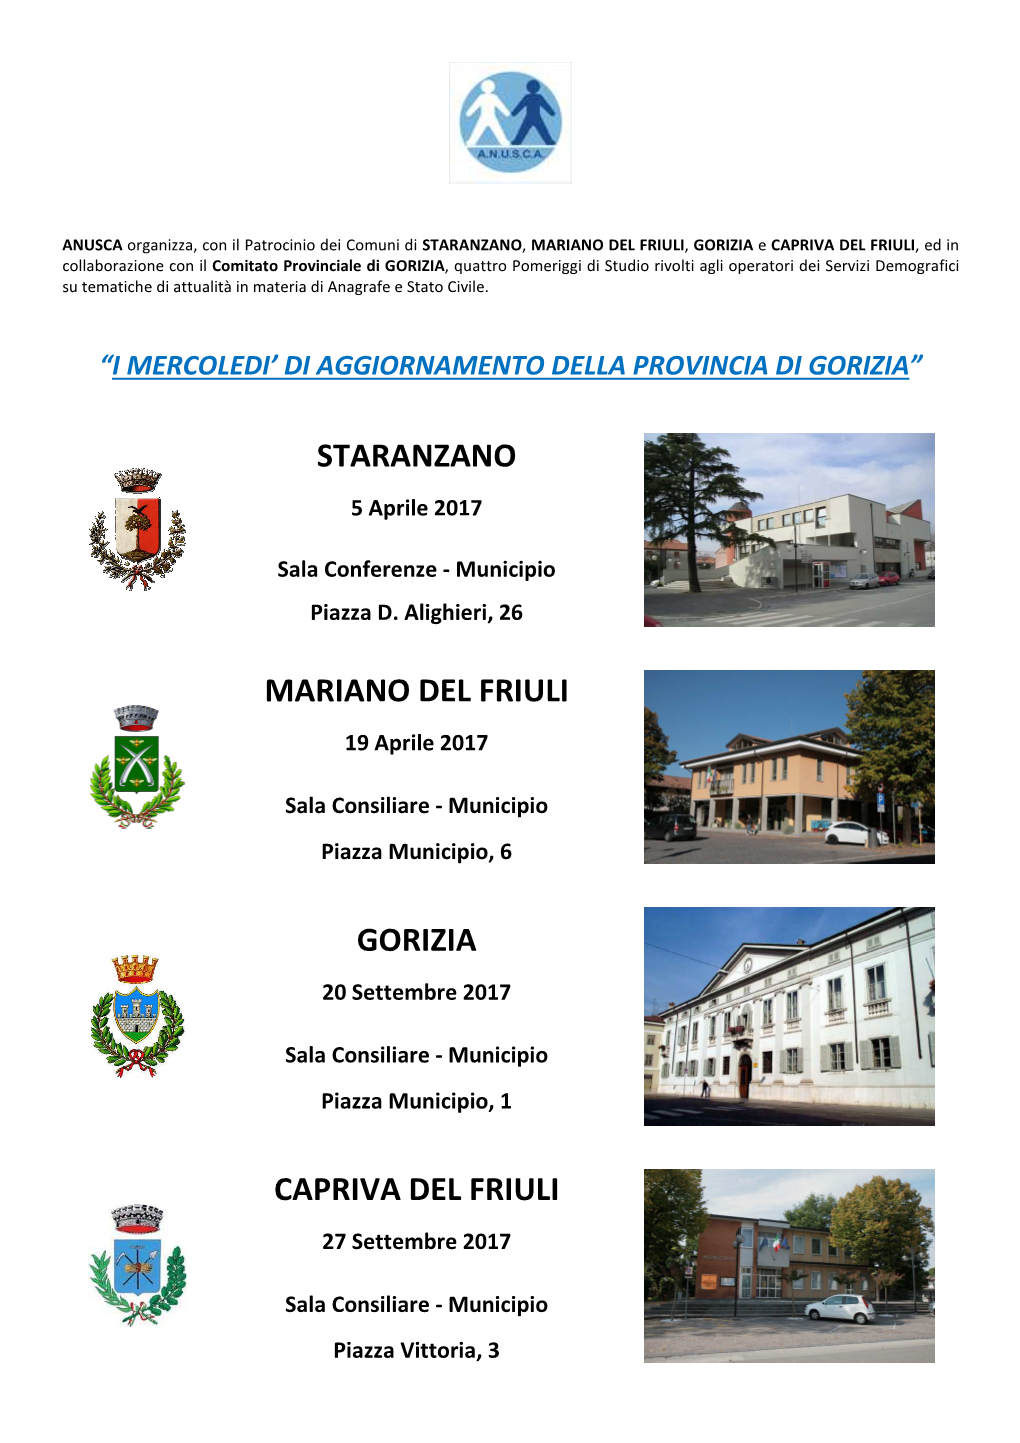 Staranzano Mariano Del Friuli Gorizia Capriva Del Friuli